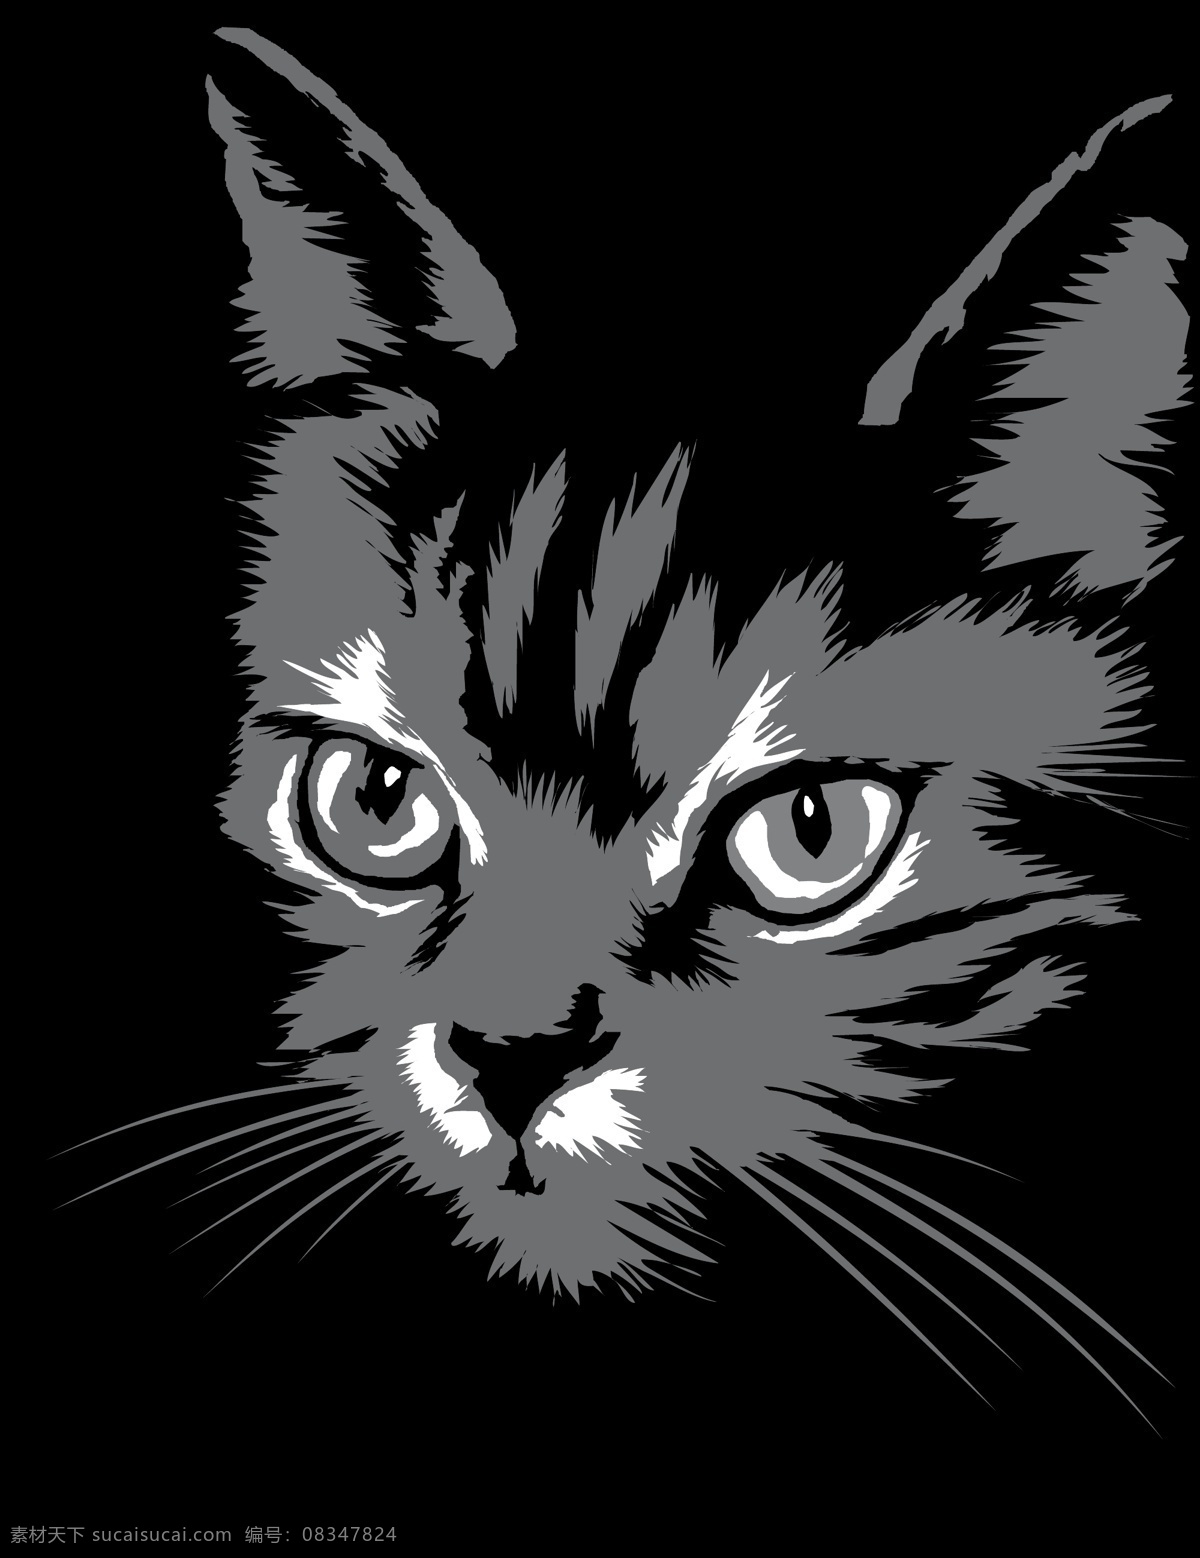 猫 剪影 矢量 免费矢量 猫的剪影 剪影轮廓 自由的猫 猫的剪影矢量 自由 狗 轮廓 黑色的猫 免费 猫狗的剪影 图像 猫剪影矢量 矢量图 花纹花边